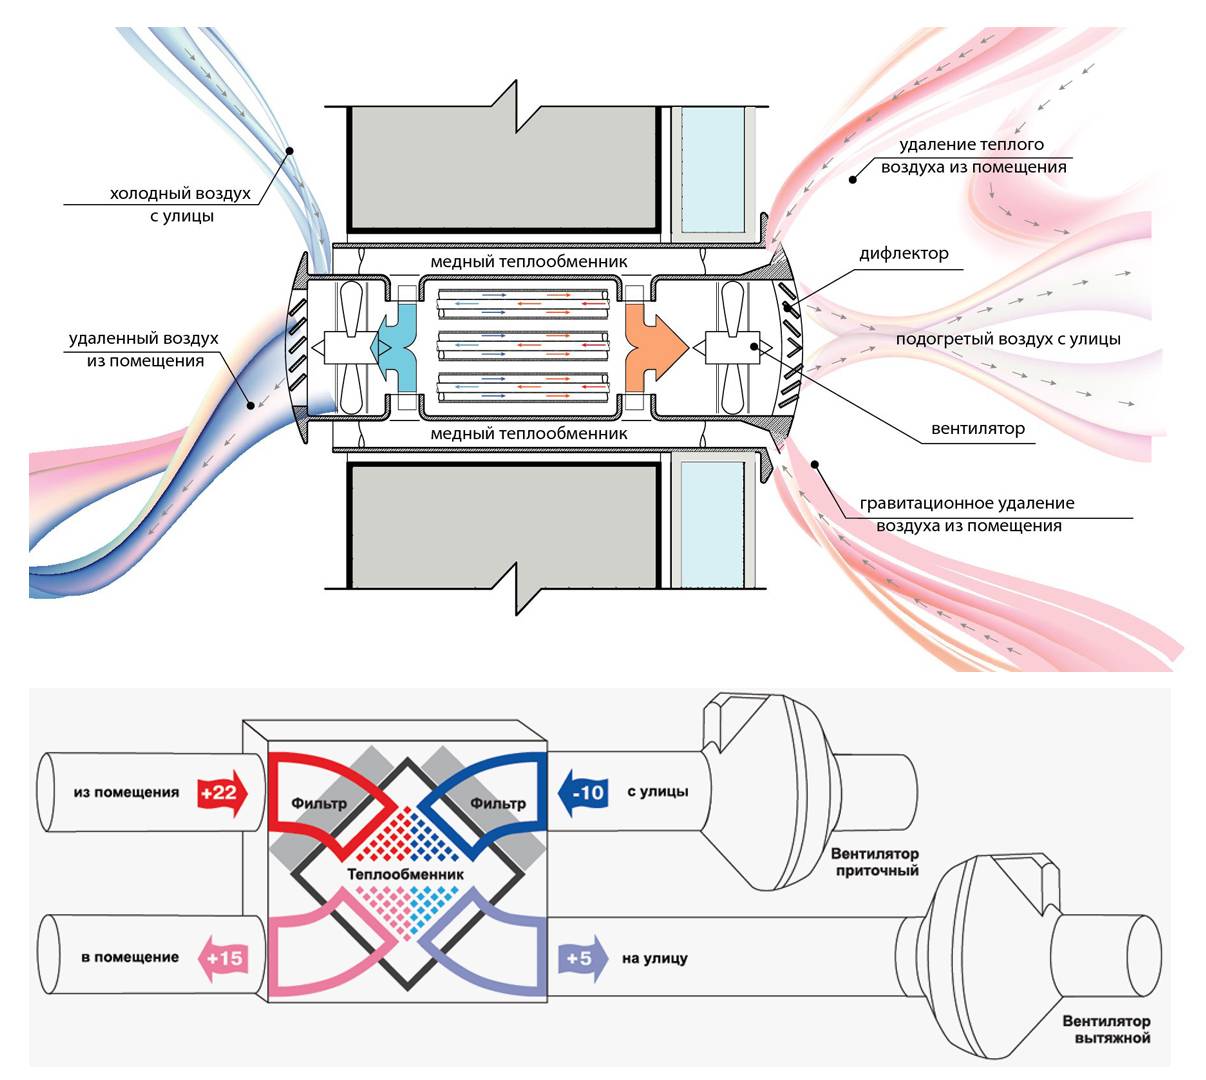 Устройство приточно-вытяжной вентиляции с рекуперацией тепла: особенности системы, её установка